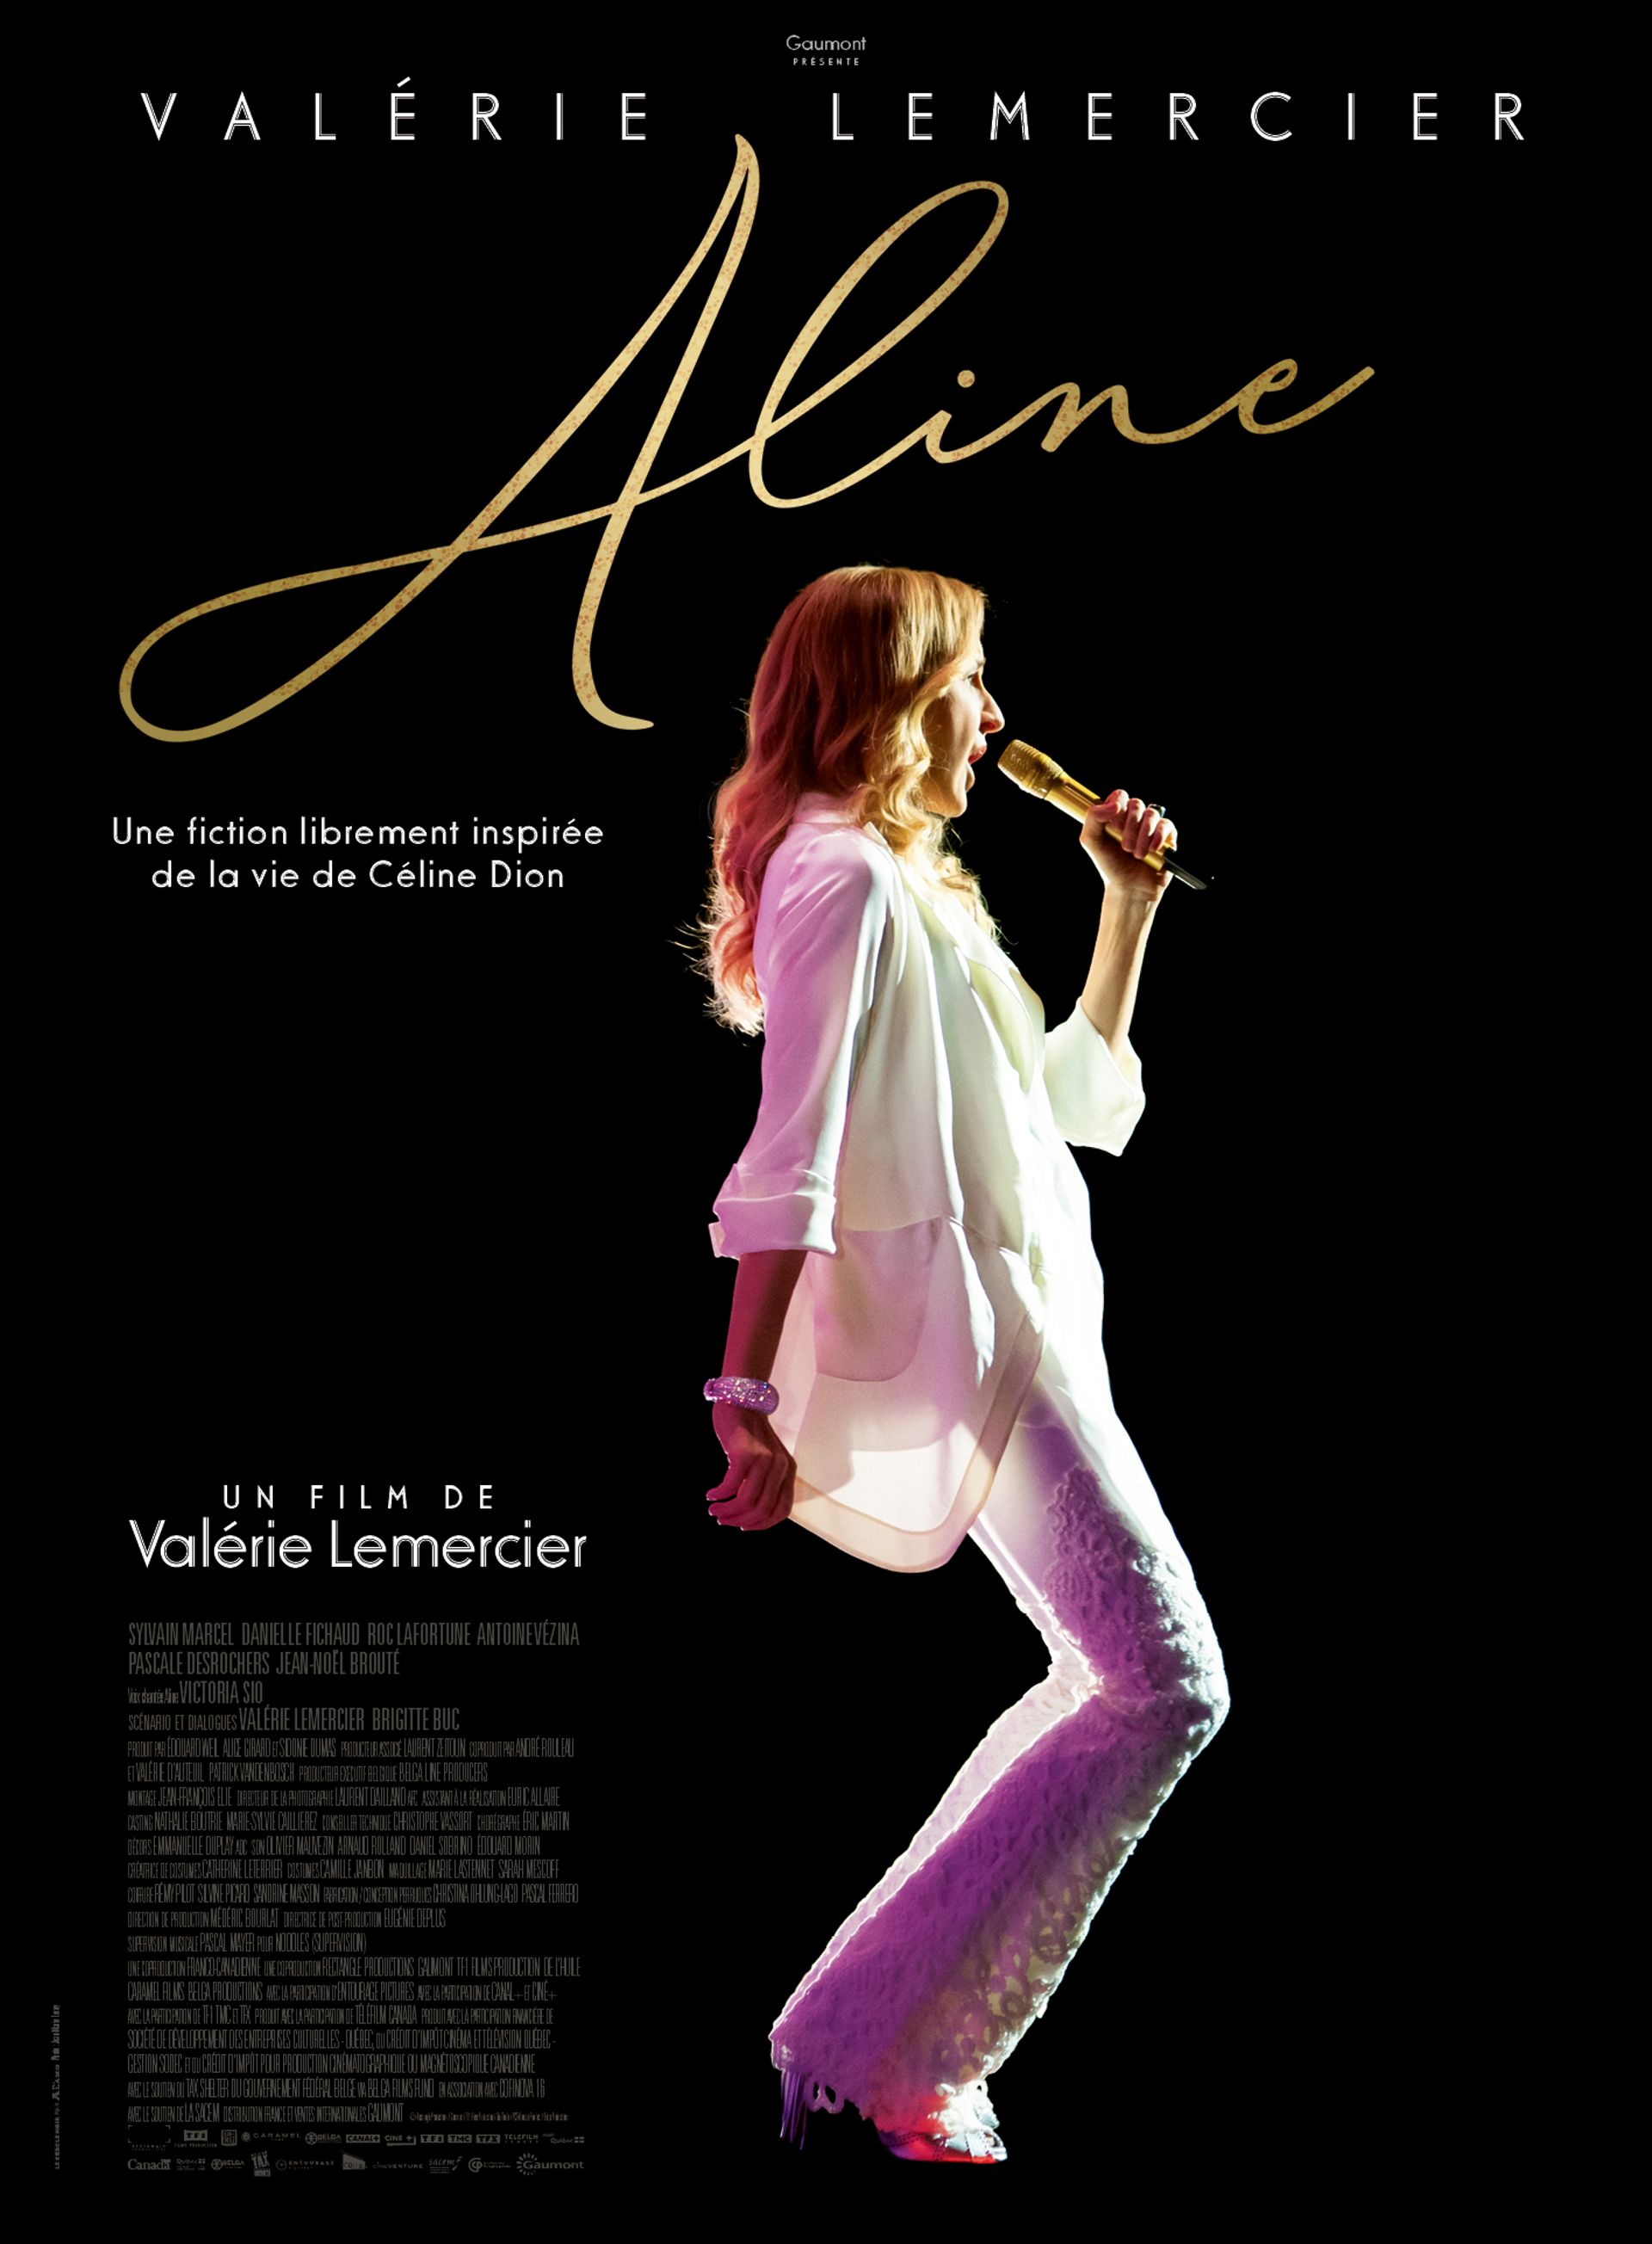 Les images de Valérie Lemercier incarnant Céline Dion... tant adulte qu'enfant